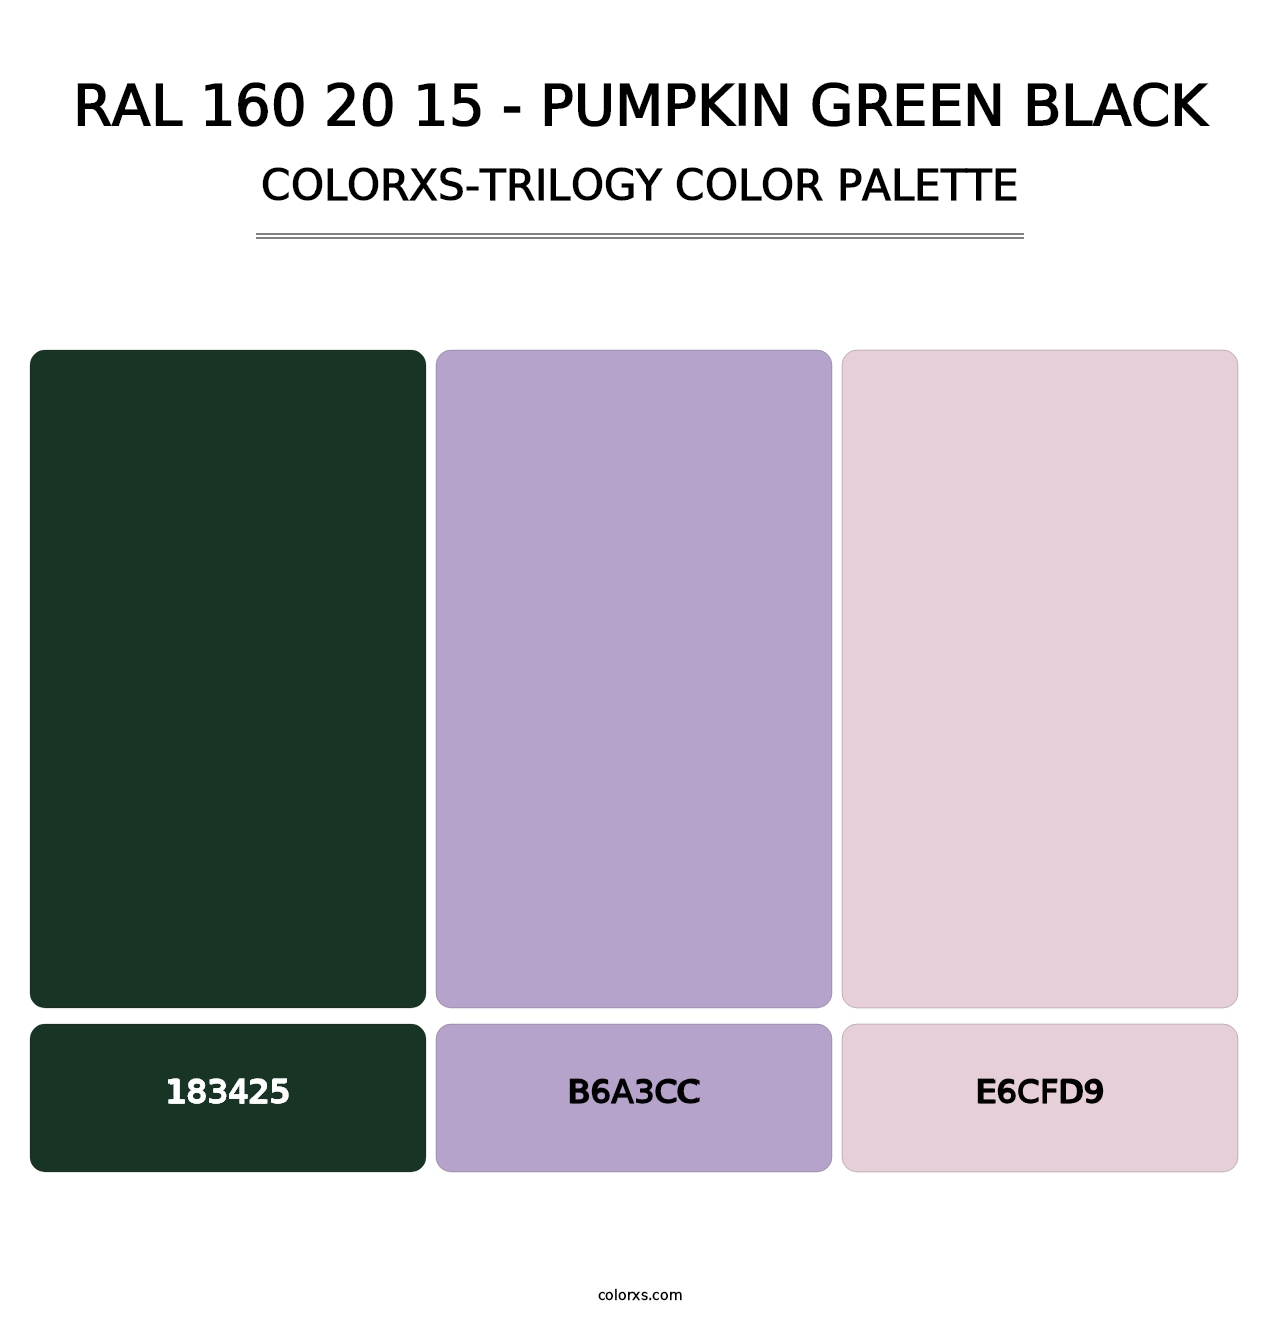 RAL 160 20 15 - Pumpkin Green Black - Colorxs Trilogy Palette